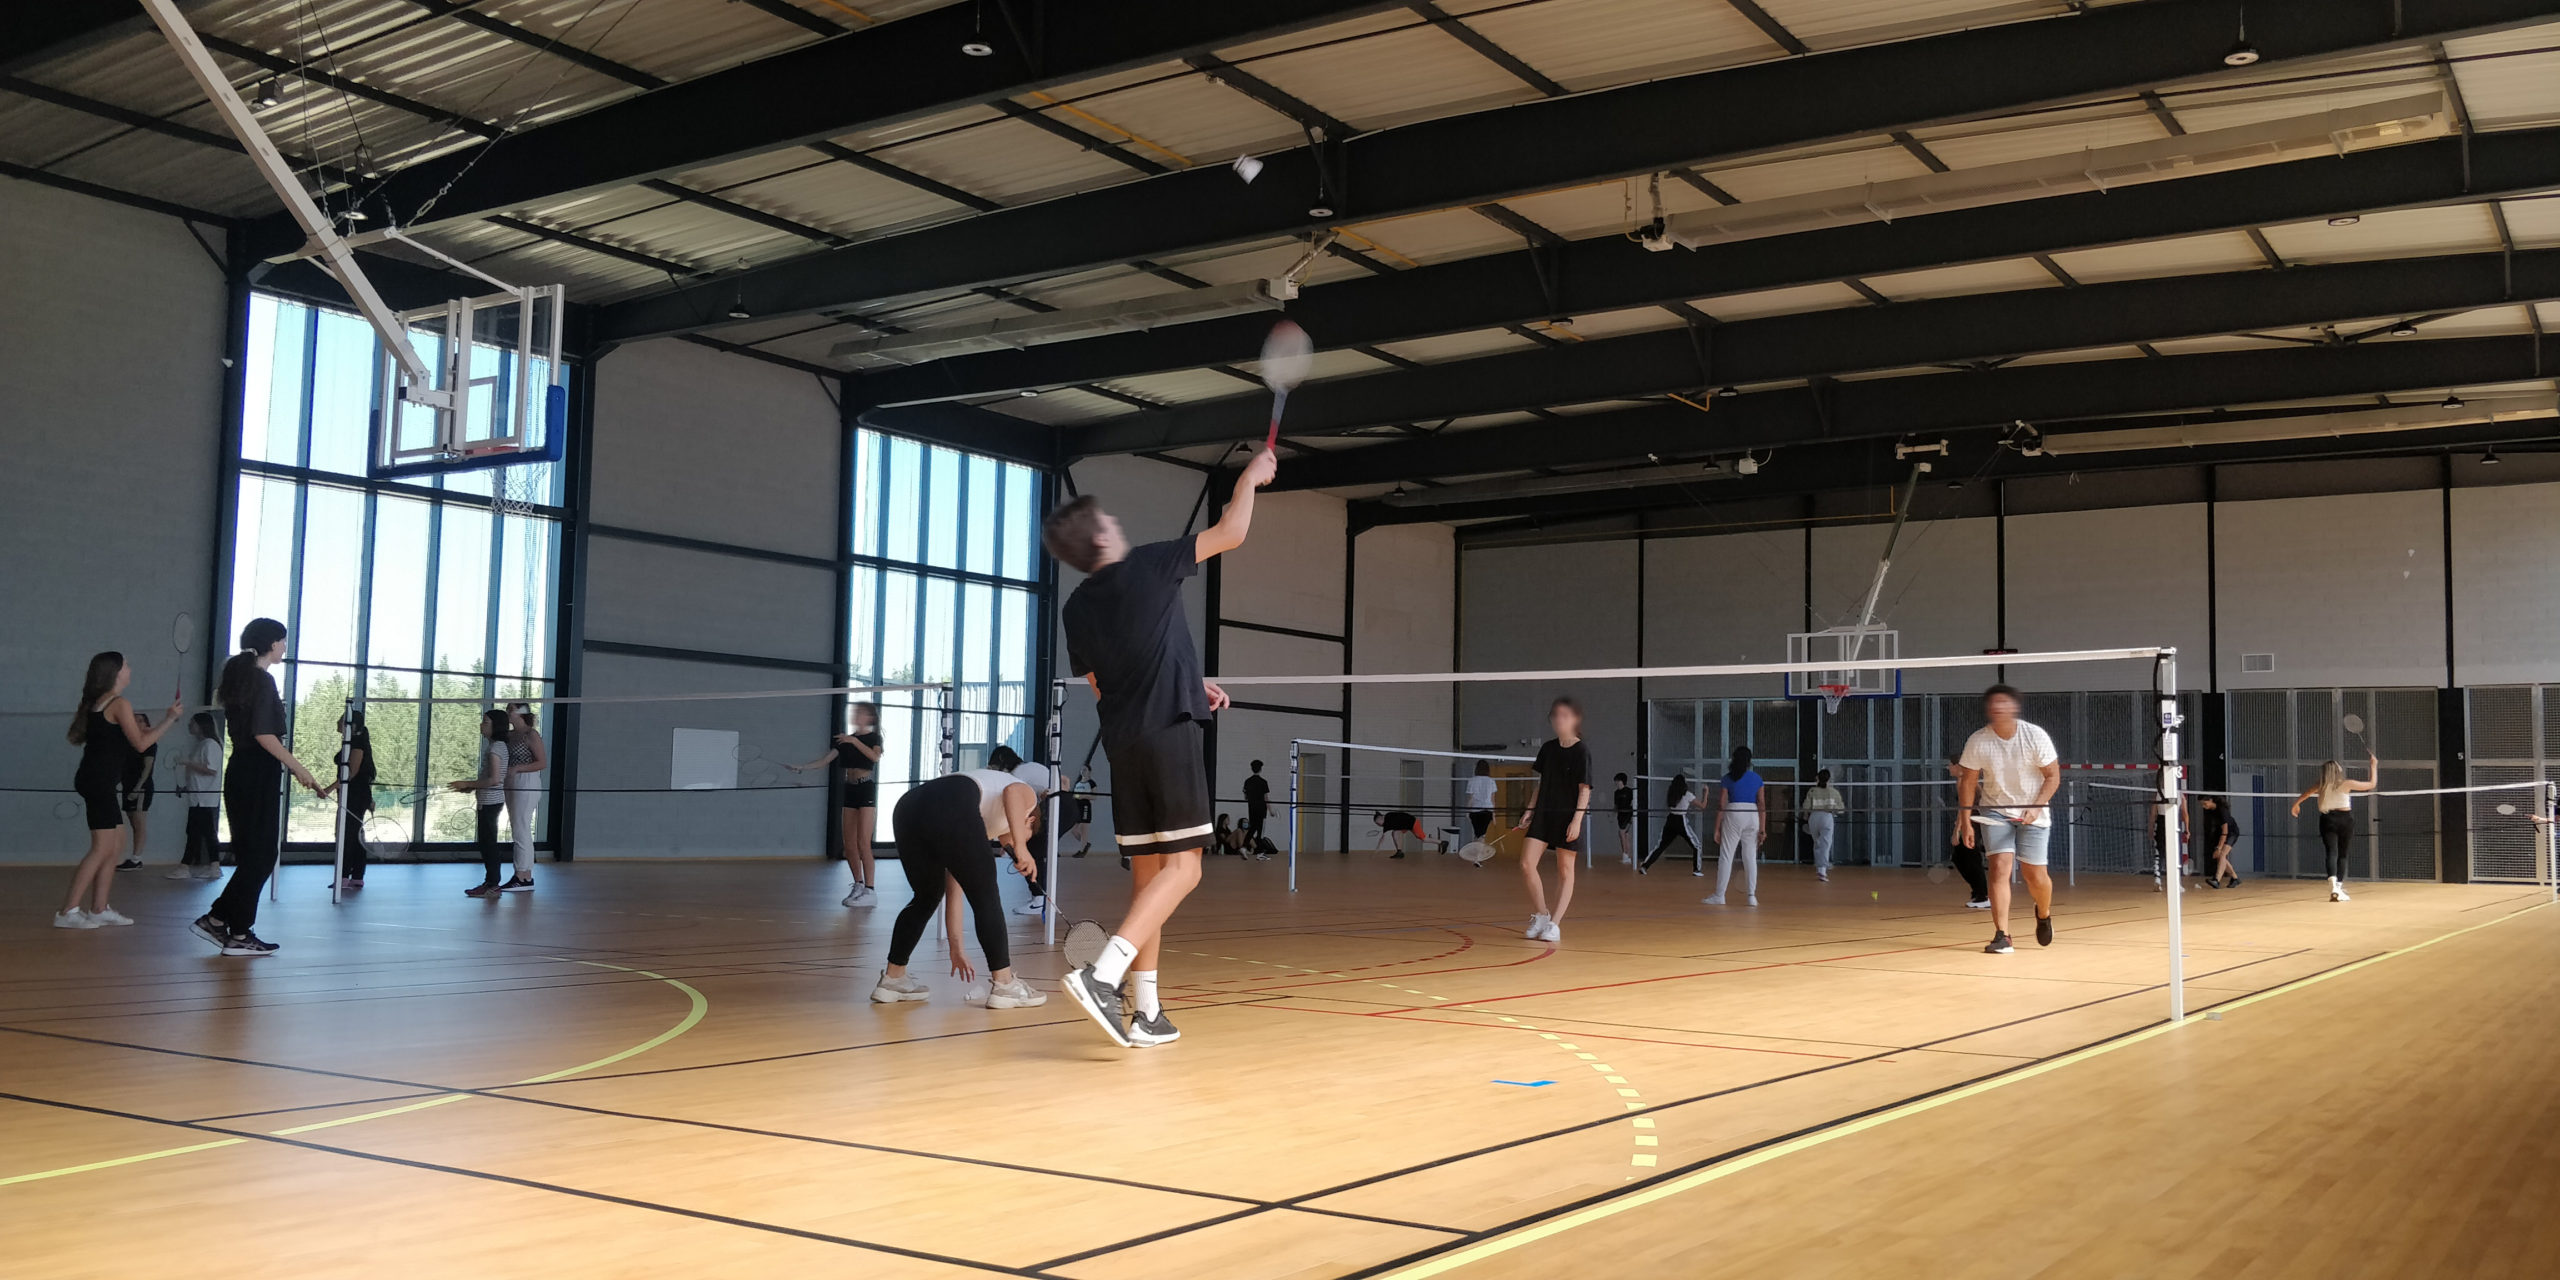 Initiation au badminton pour une classe de première. Photo : Christophe Colrat